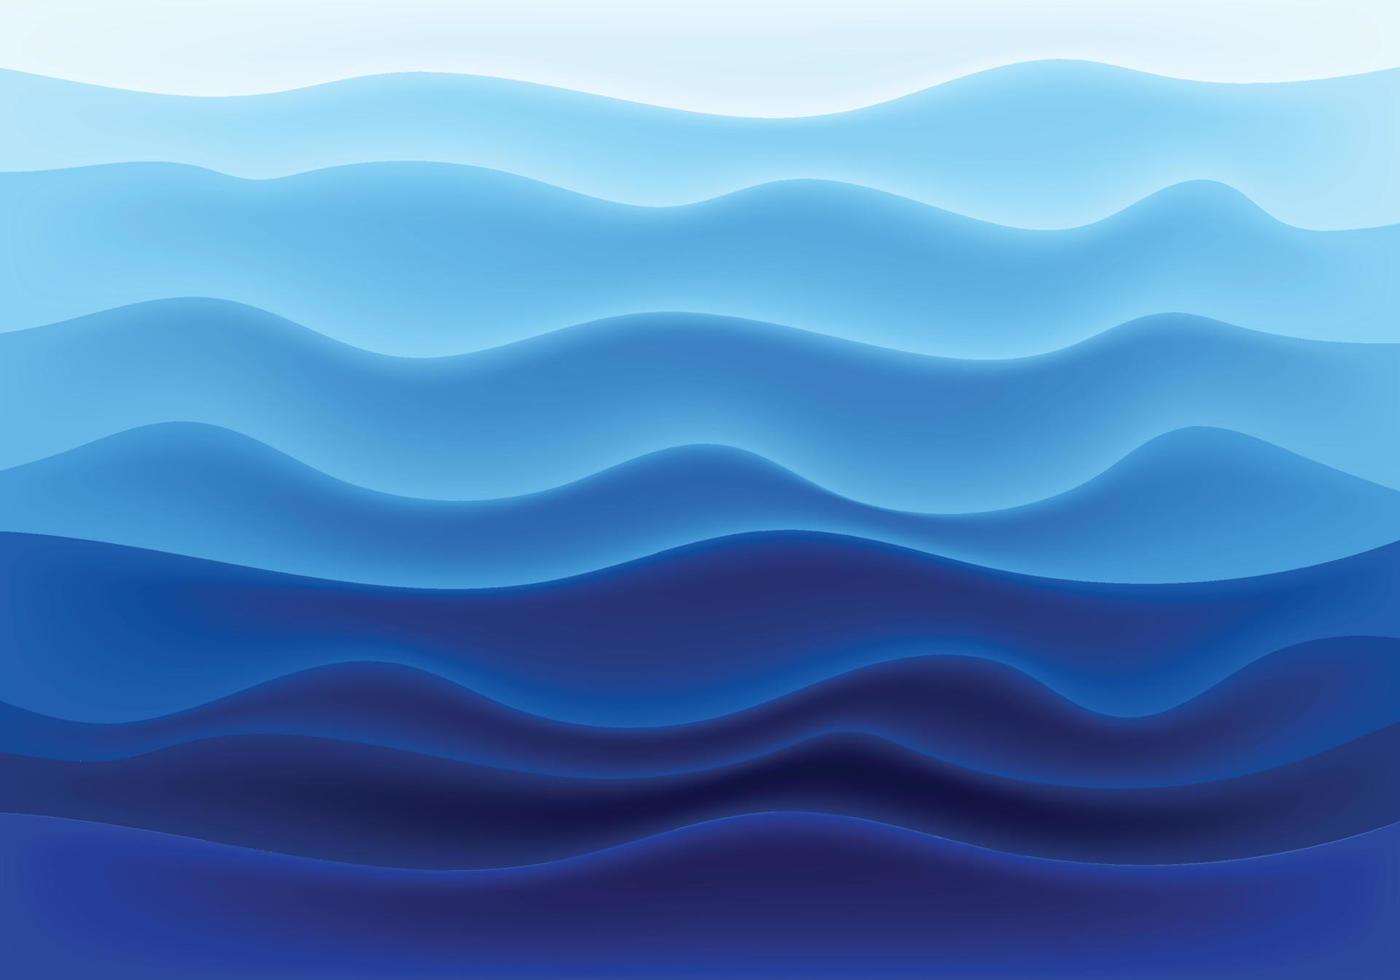 zee blauwe golven wereld oceaan dag achtergrond vector